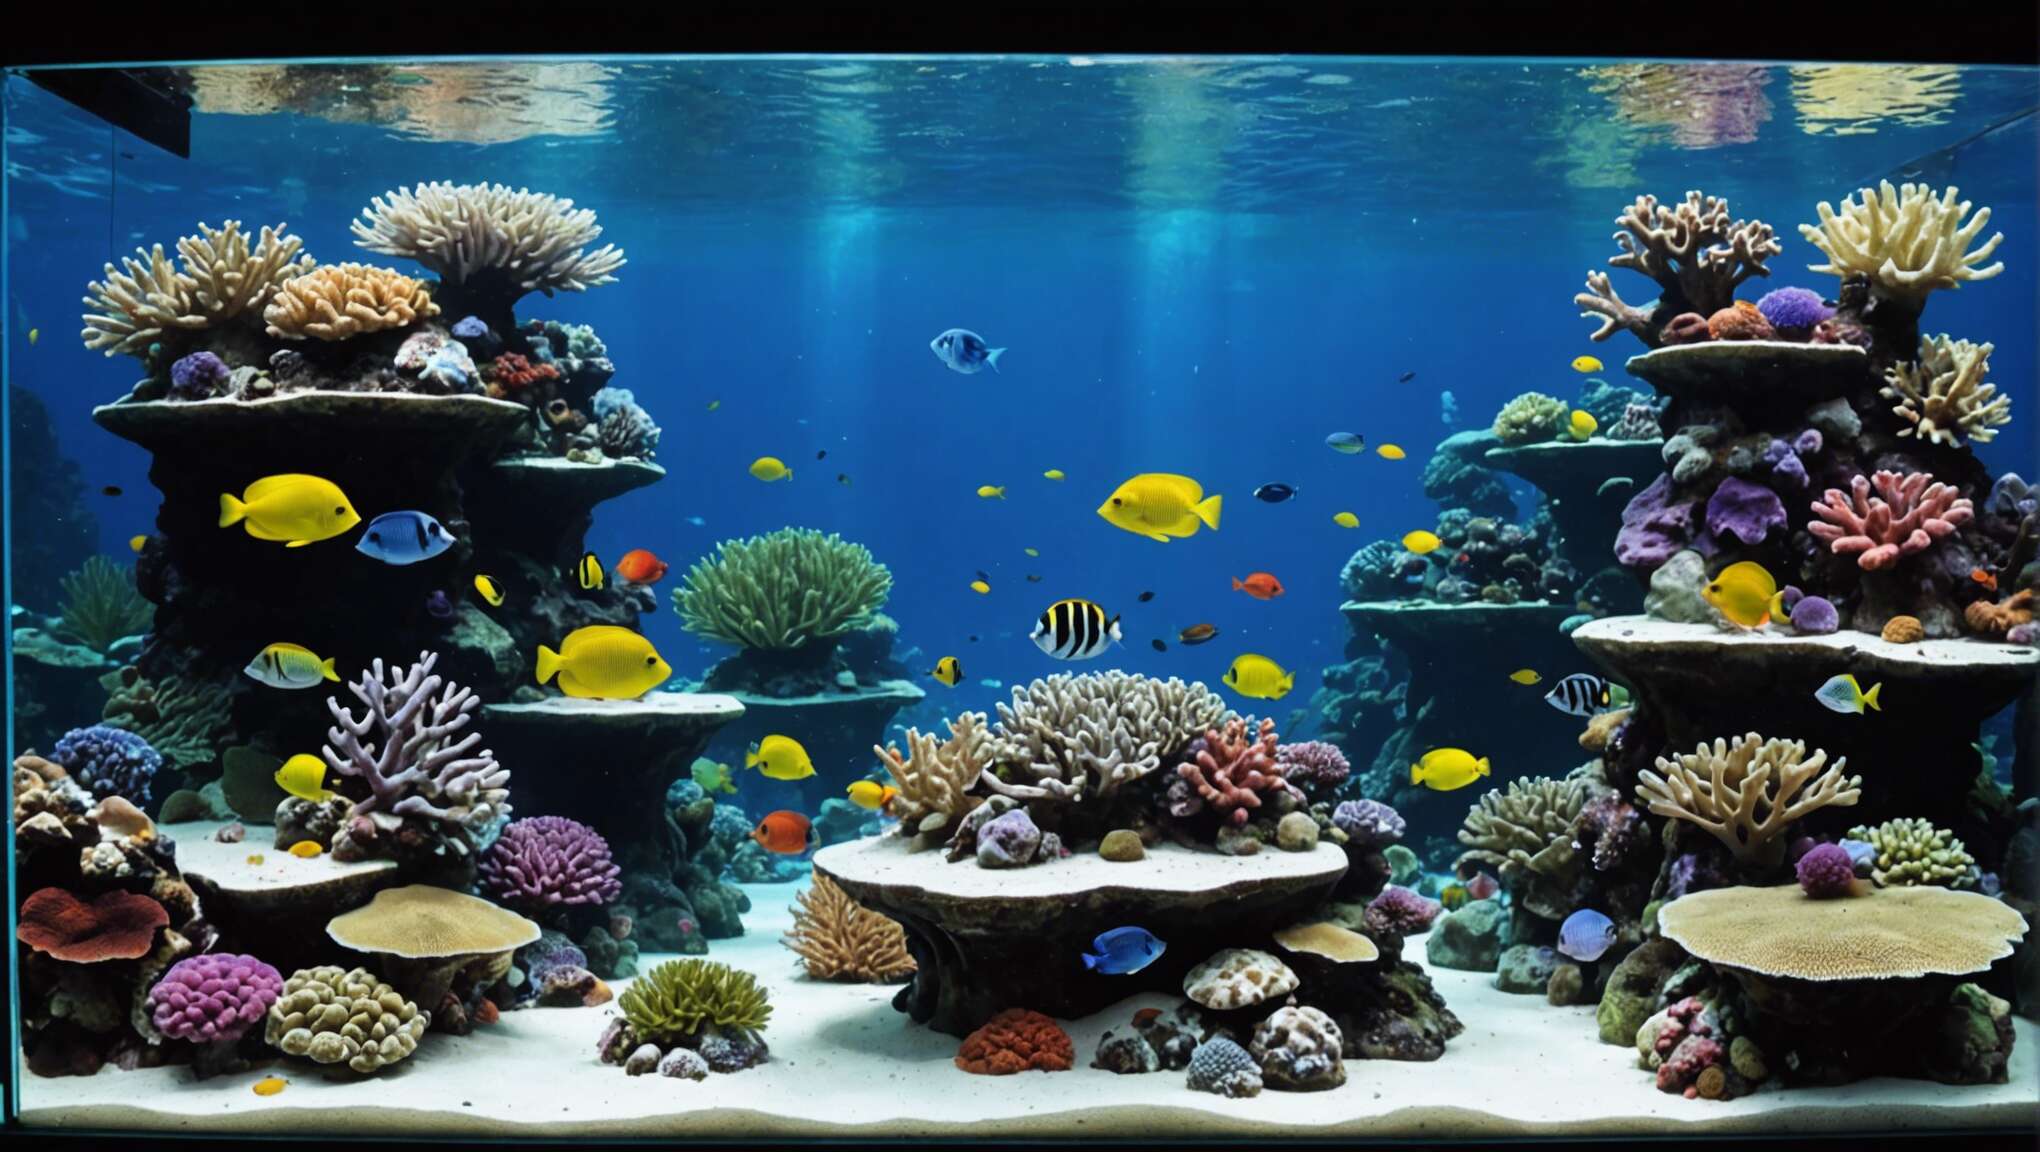 Les paramètres essentiels à surveiller dans votre aquarium marin